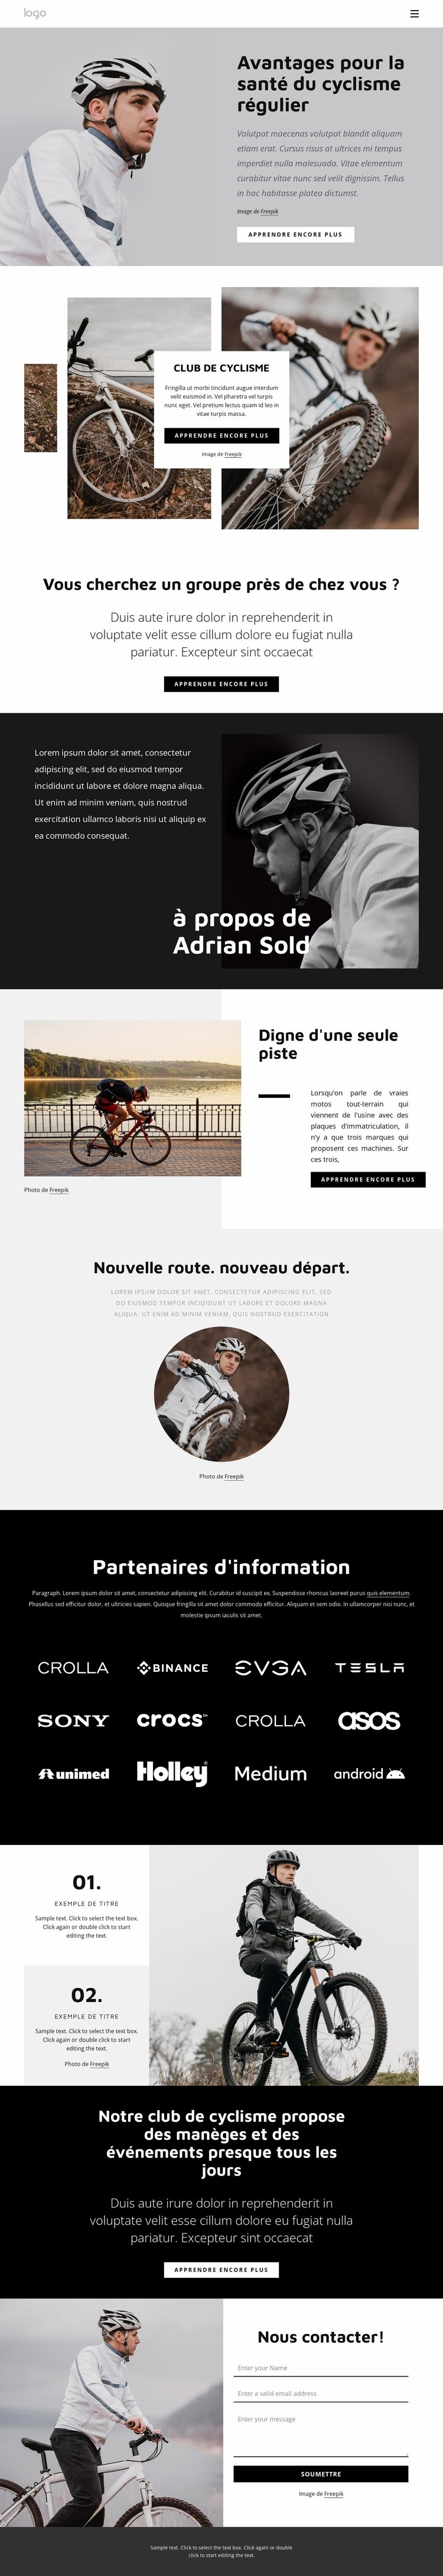 Avantages du cyclisme régulier Modèle d'une page